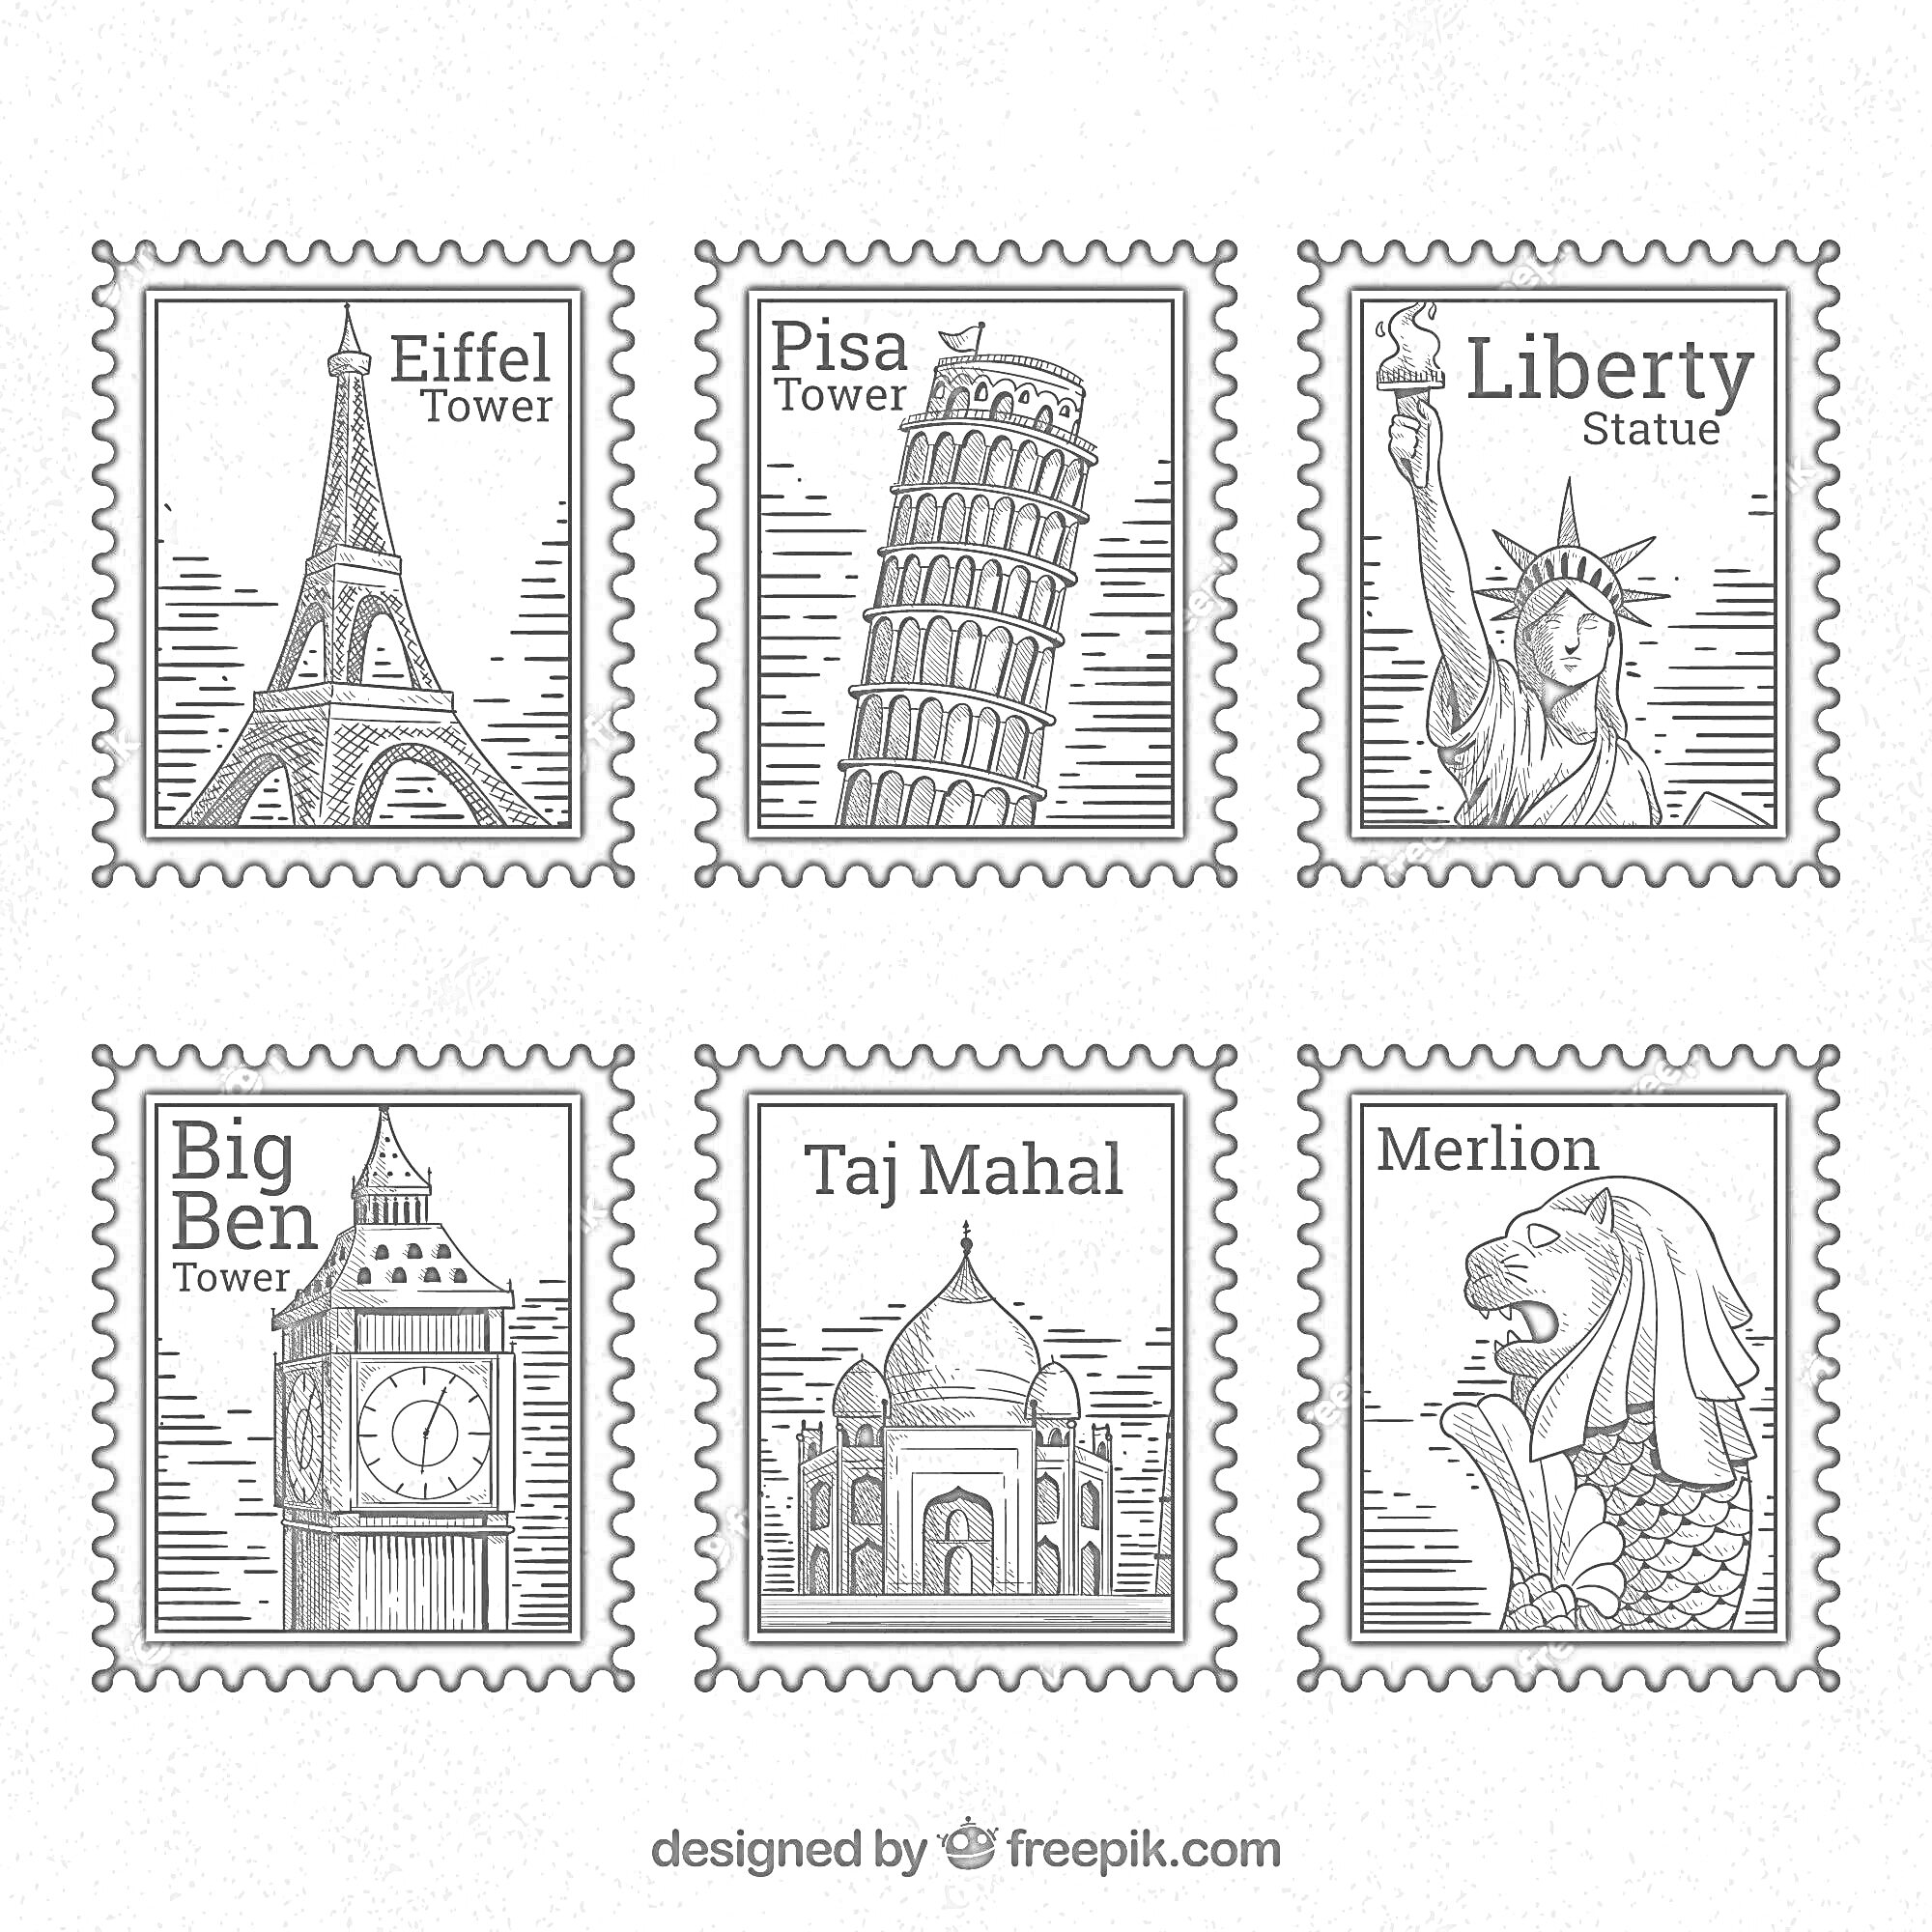 Раскраска марки с достопримечательностями: Эйфелева башня, Пизанская башня, статуя Свободы, Биг-Бен, Тадж-Махал, Мерлайон